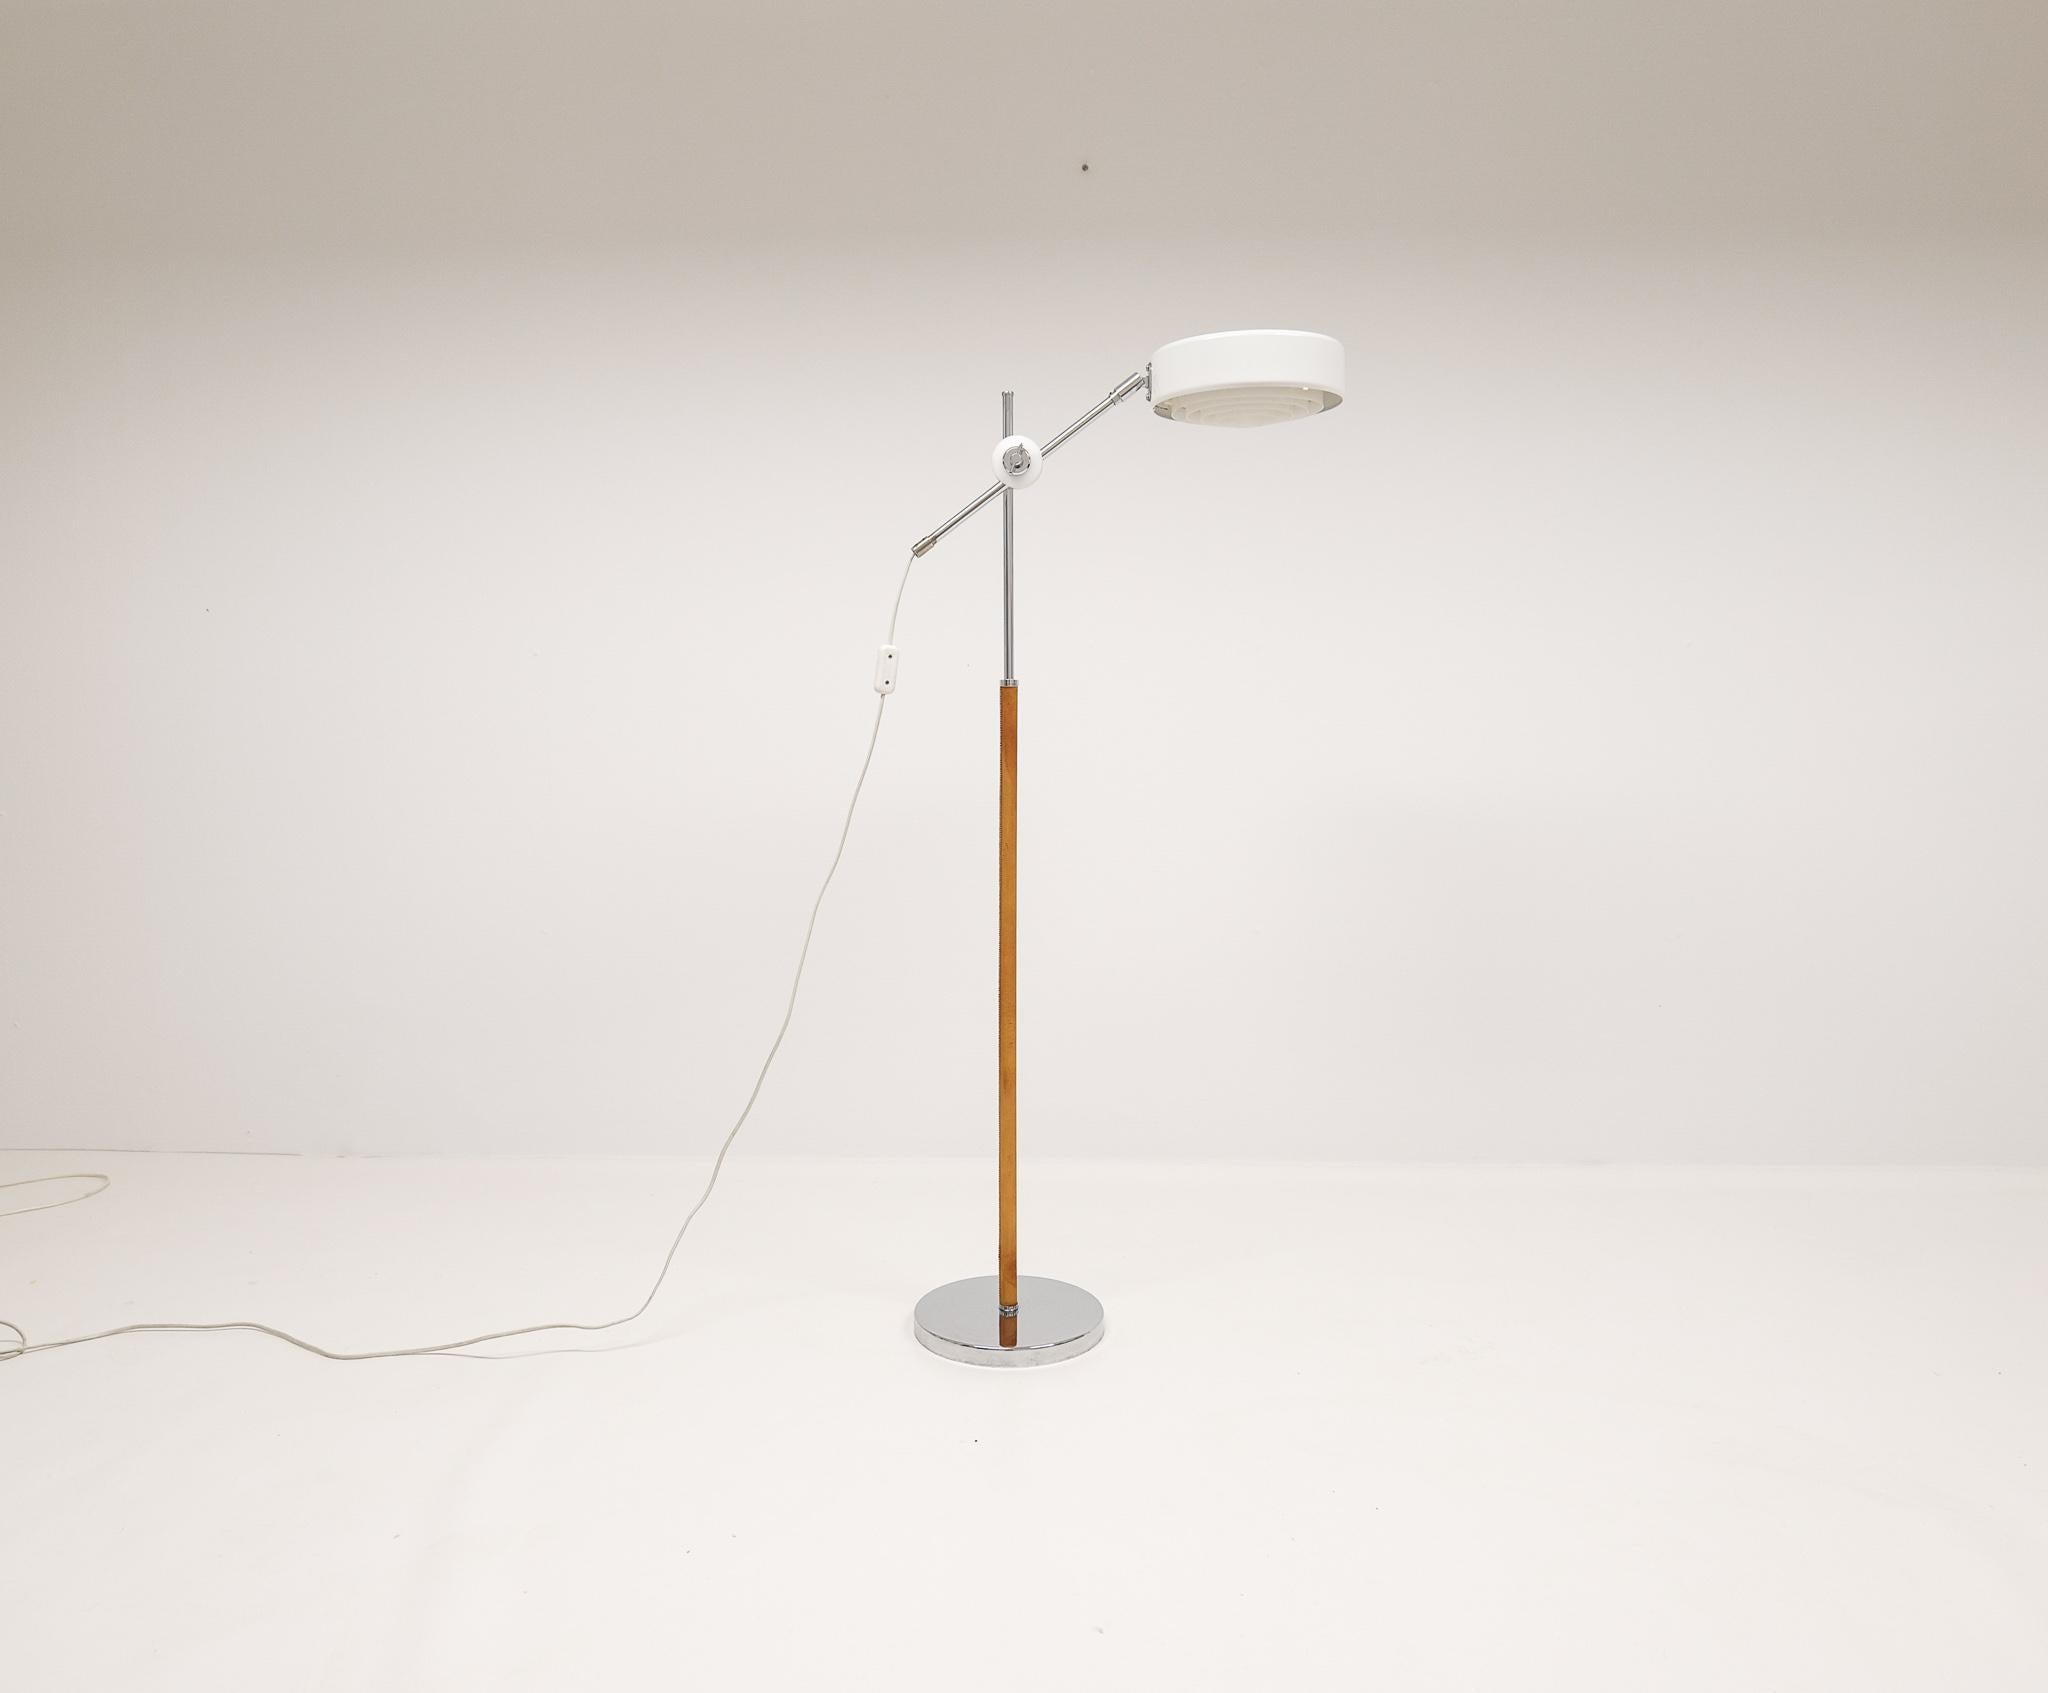 Le lampadaire Simris a été conçu par Anders Pehrson, qui a repris l'entreprise Atelje' Lyktan en 1964. La lampe a un pied chromé avec du cuir et du chrome sur les autres parties. La lampe est réglable en hauteur et l'abat-jour peut être tourné à 360